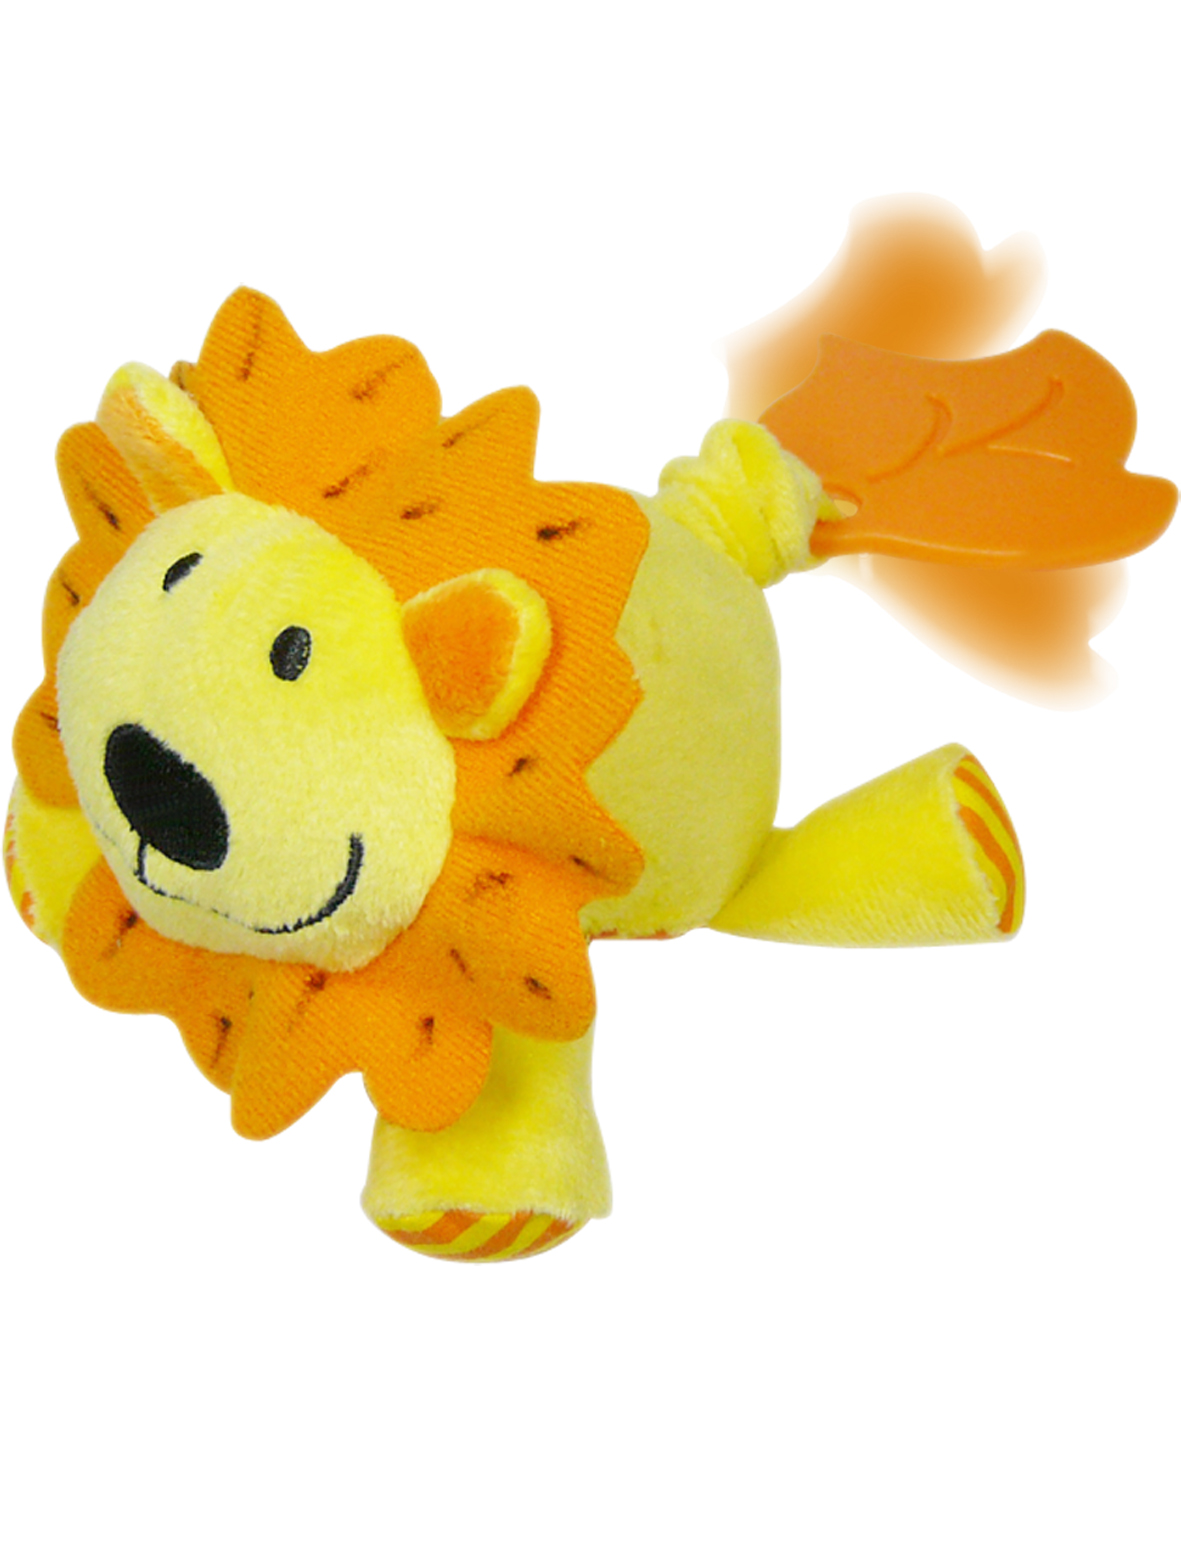 Игрушка-виброползунок Biba Toys Львенок (948JF lion)